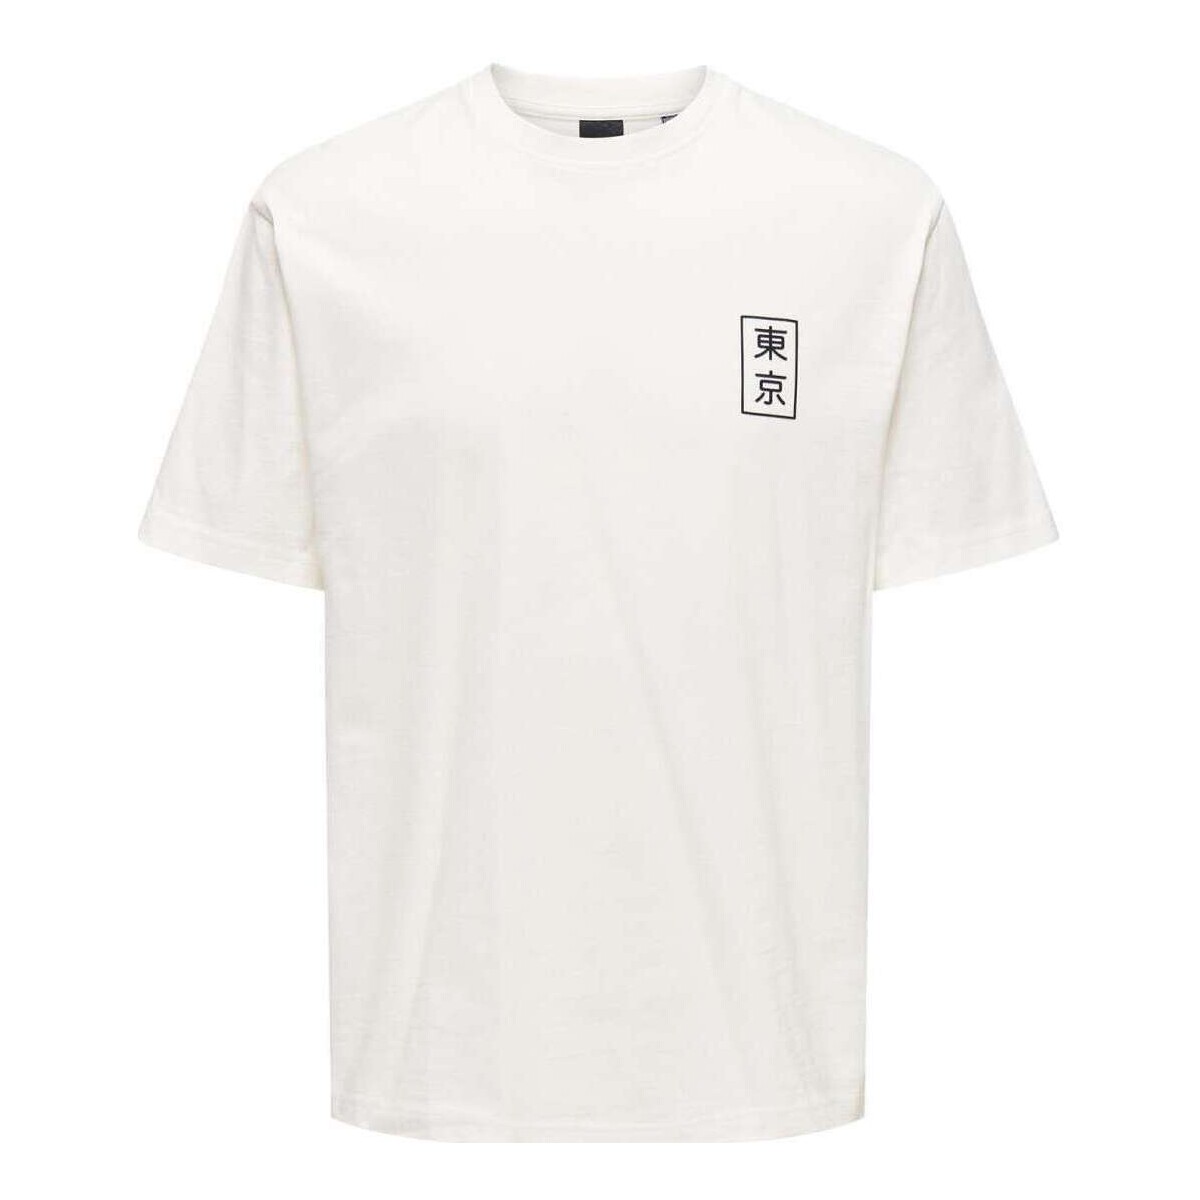 Vêtements Homme T-shirts manches courtes Only&sons 162300VTPE24 Beige